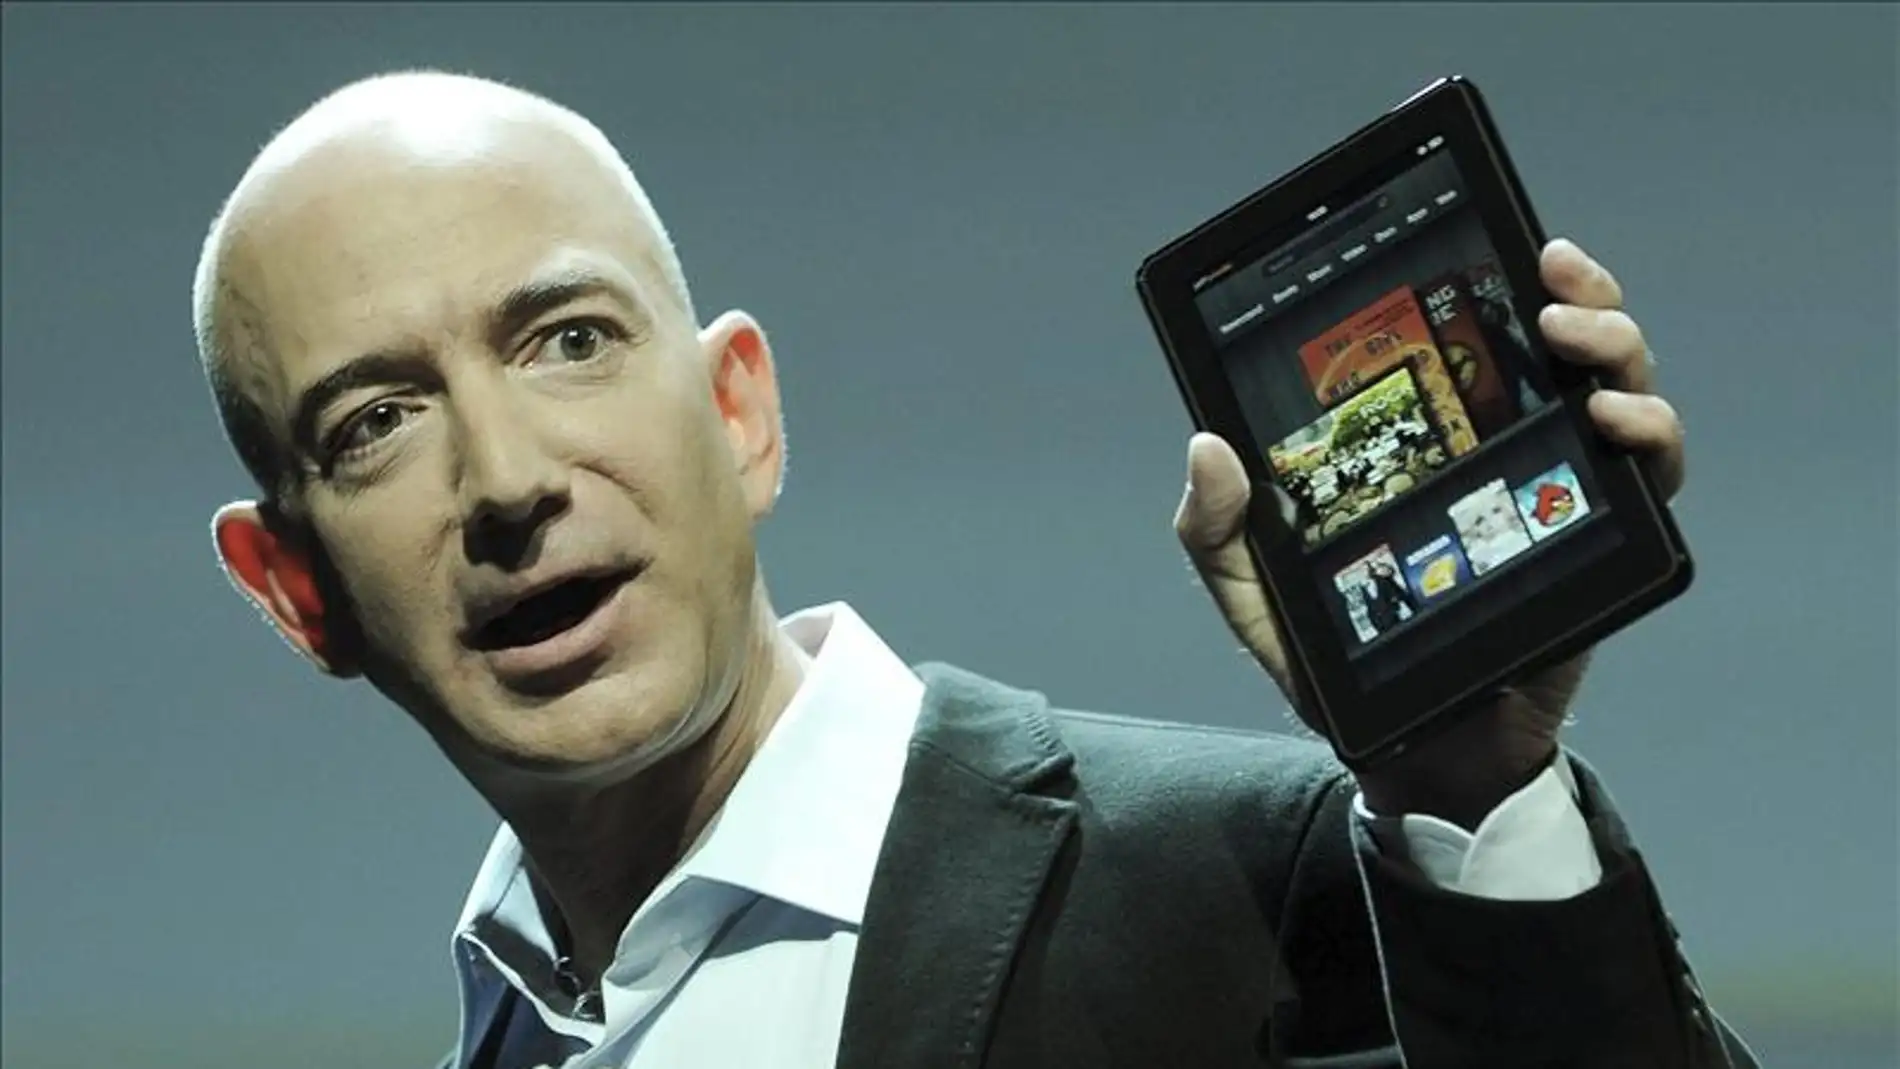 El fundador y consejero delegado de la tienda por internet Amazon, Jeff Bezos, presenta la nueva tableta.